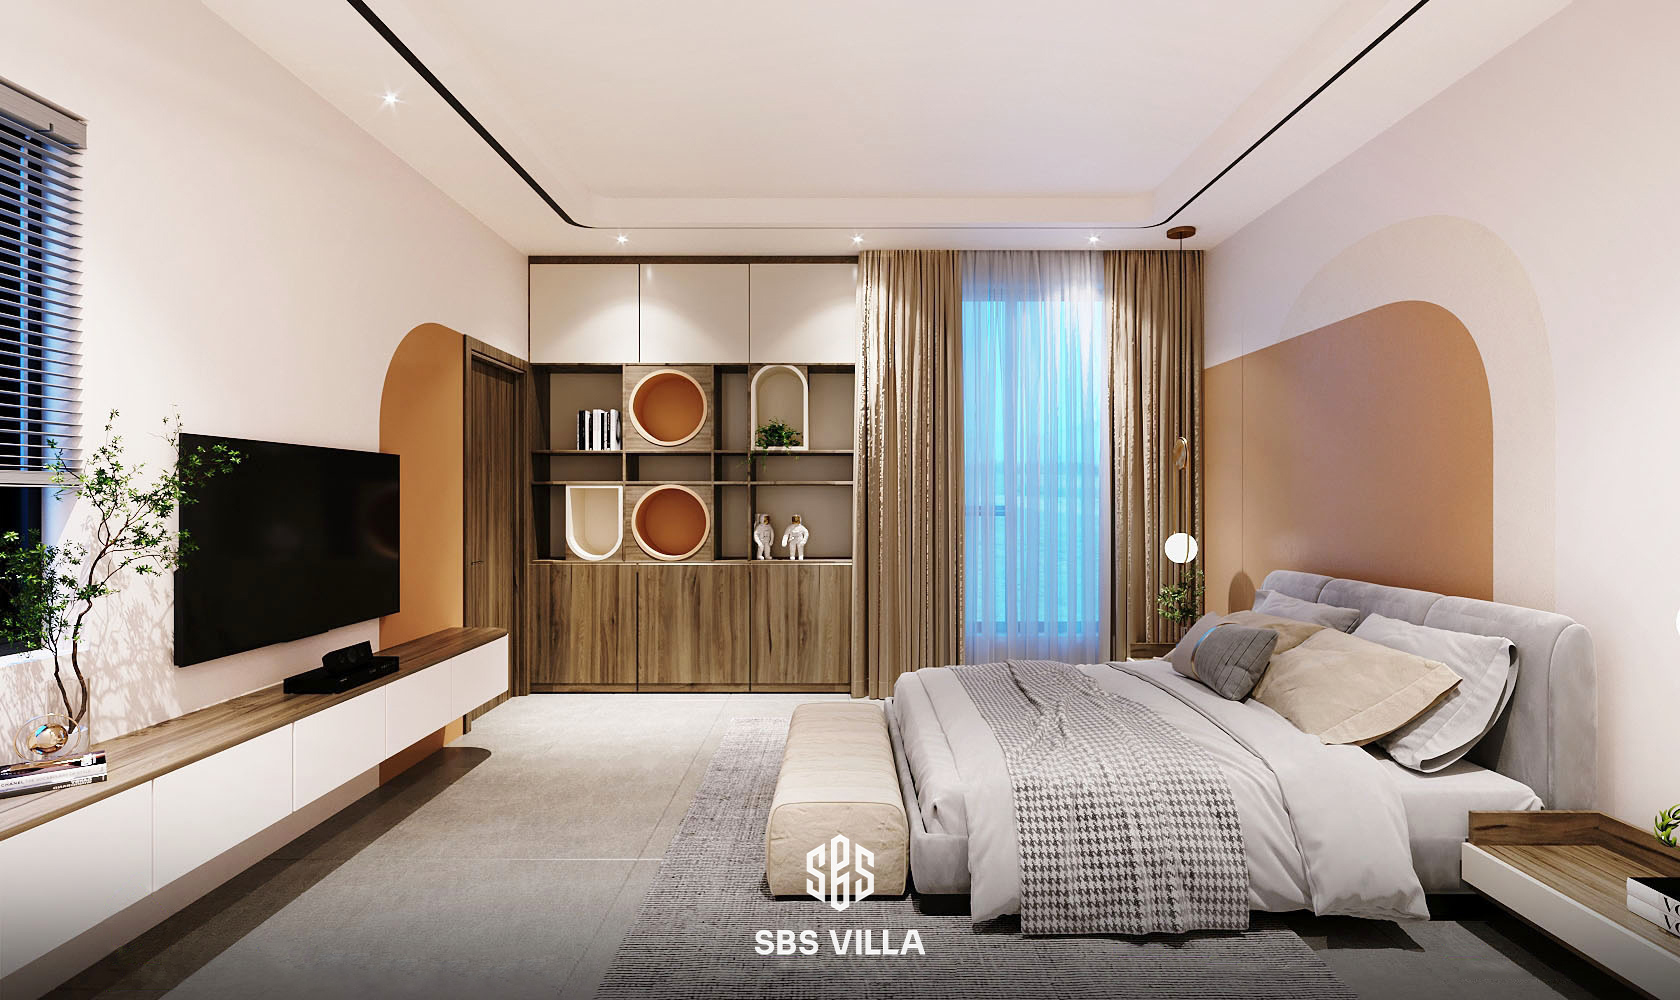 Thiết kế sử dụng sắc cam tạo điểm nhấn nổi bật cho không gian phòng ngủ